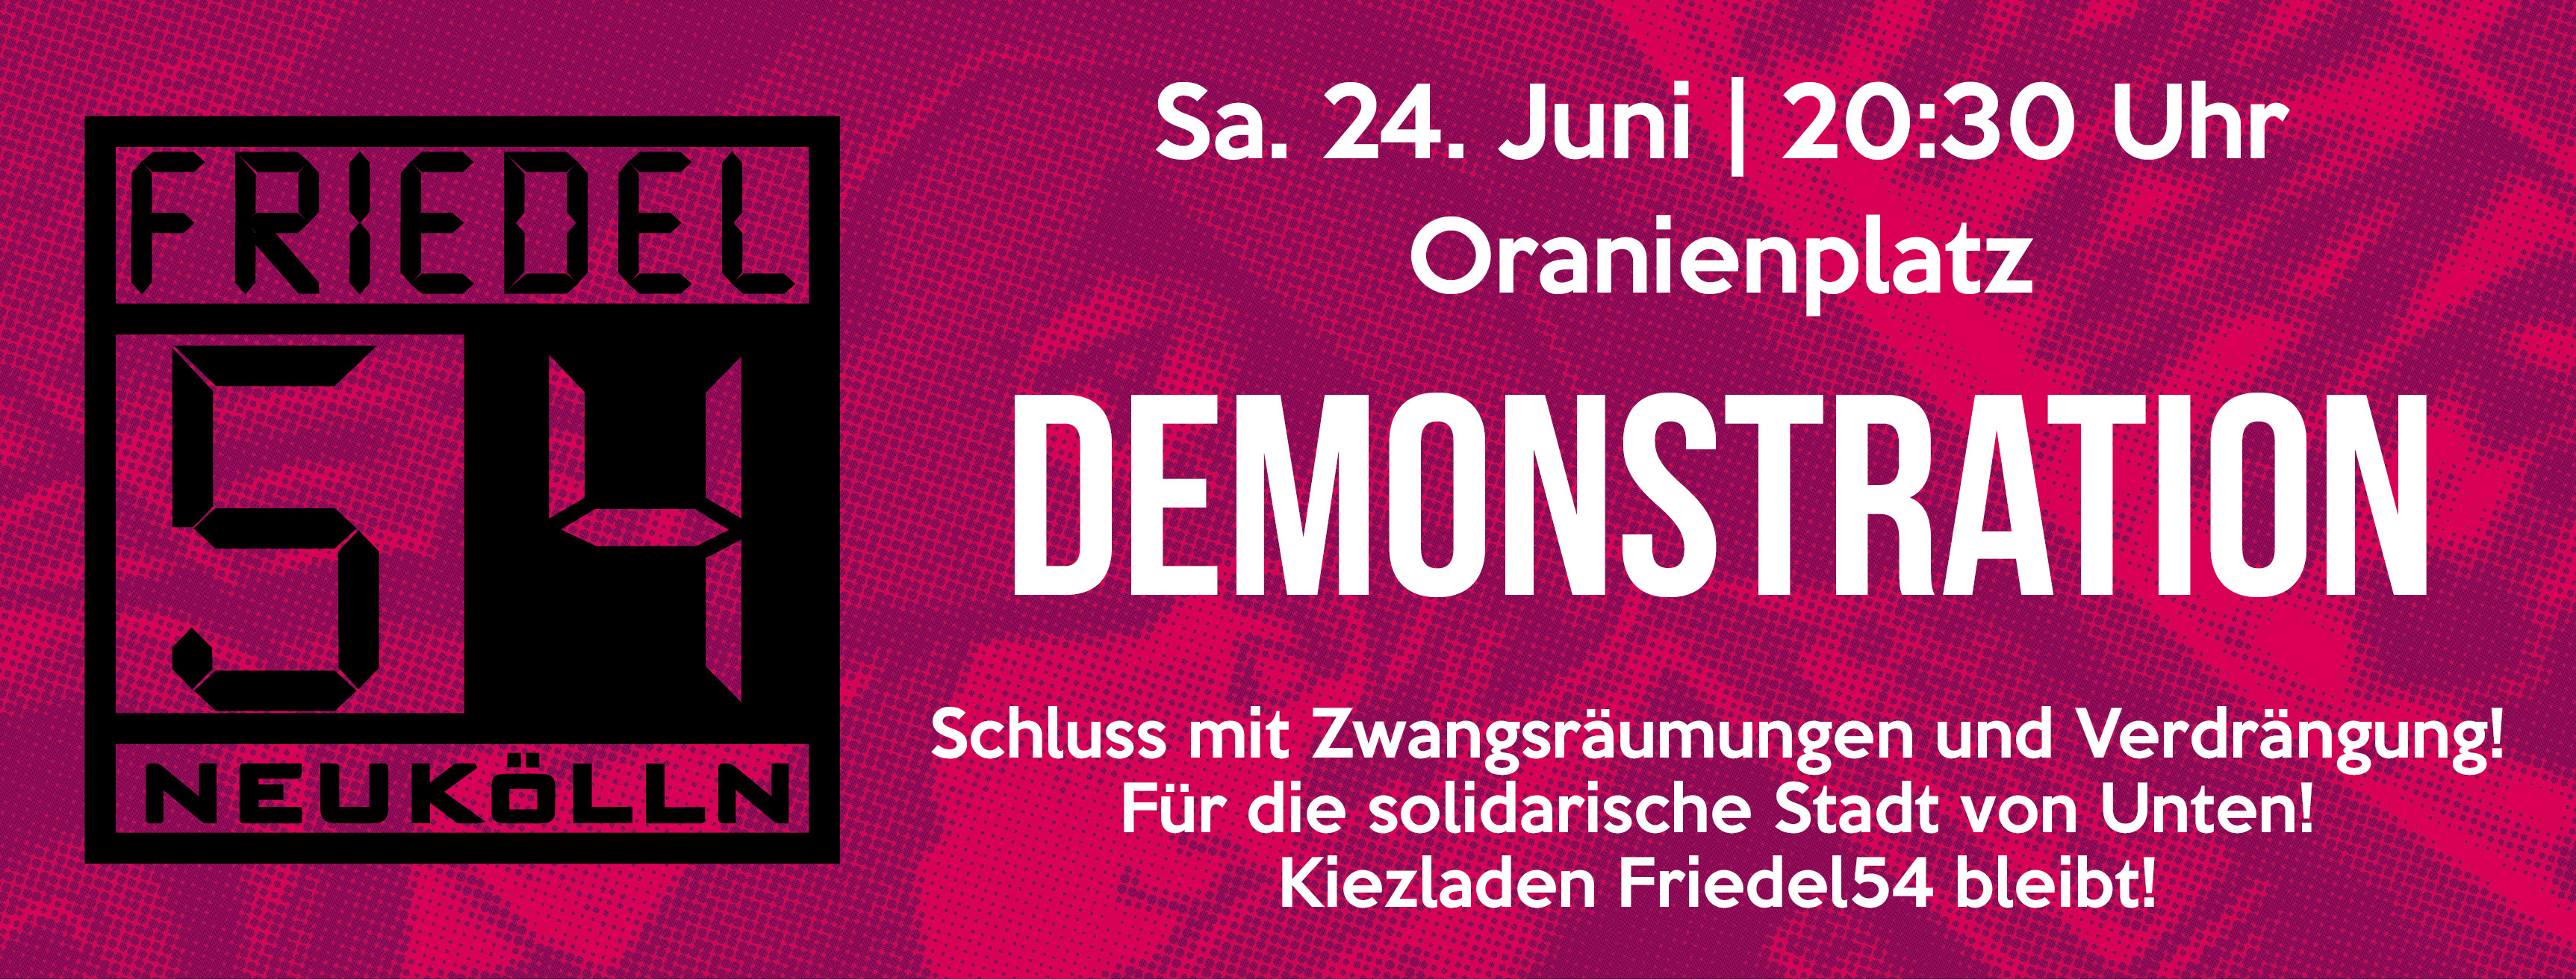 [PM] Heute: Demo gegen geplante Räumung des Kiezladens Friedel54 in Neukölln